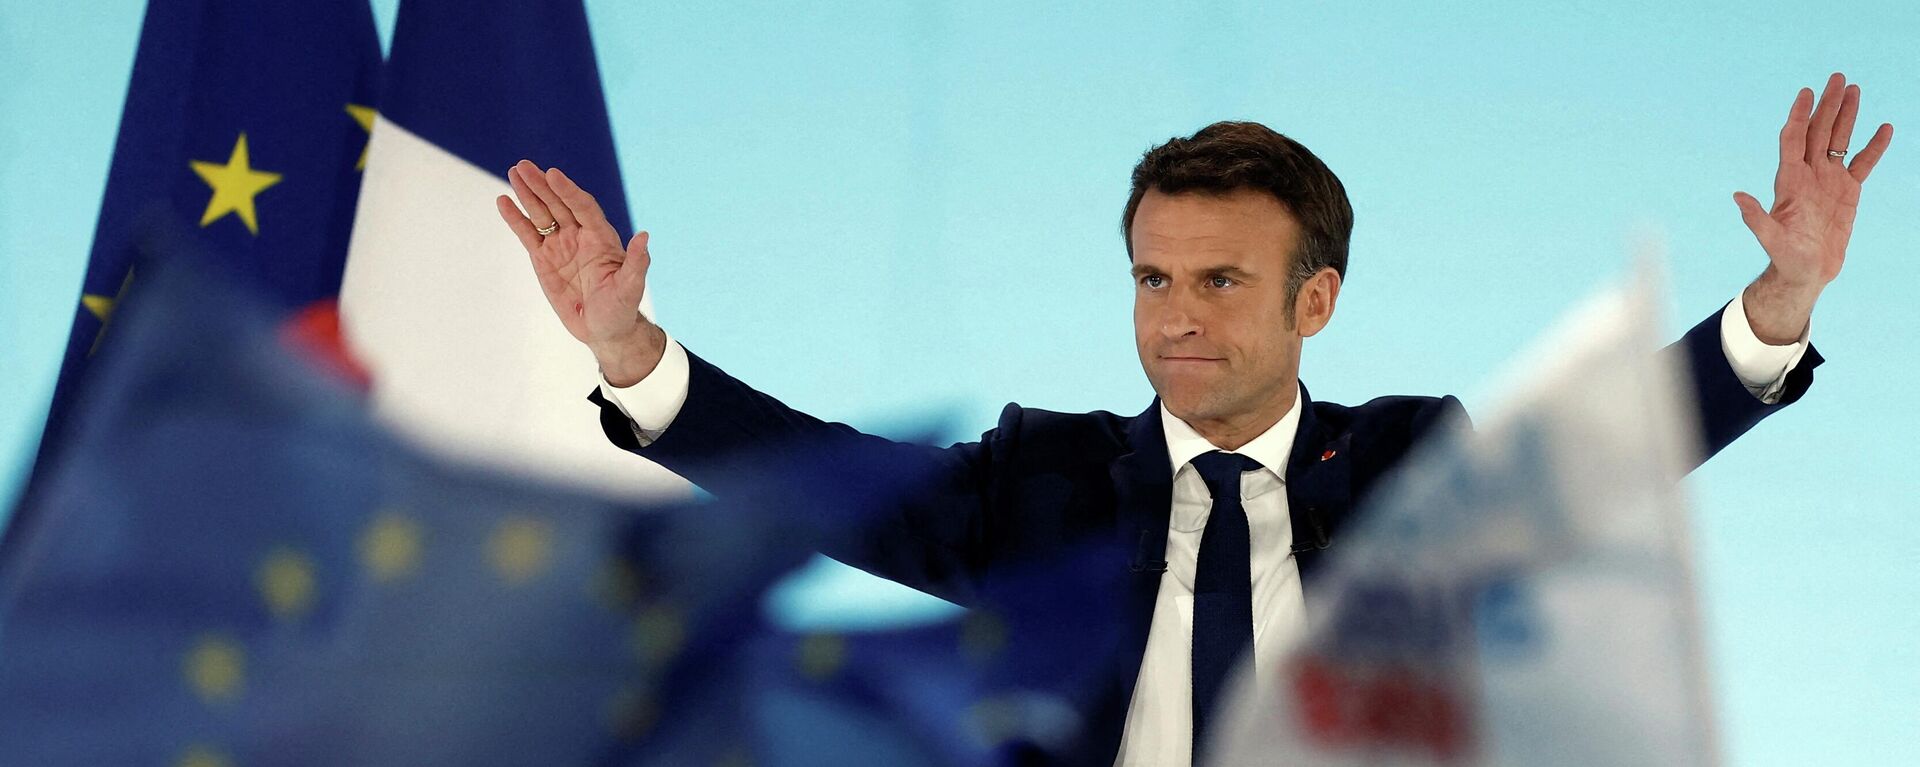 الانتخابات الرئاسية الفرنسية - المرشح الفرنسي والرئيس الحالي إيمانويل ماكرون، فرنسا 2022 - سبوتنيك عربي, 1920, 21.04.2022